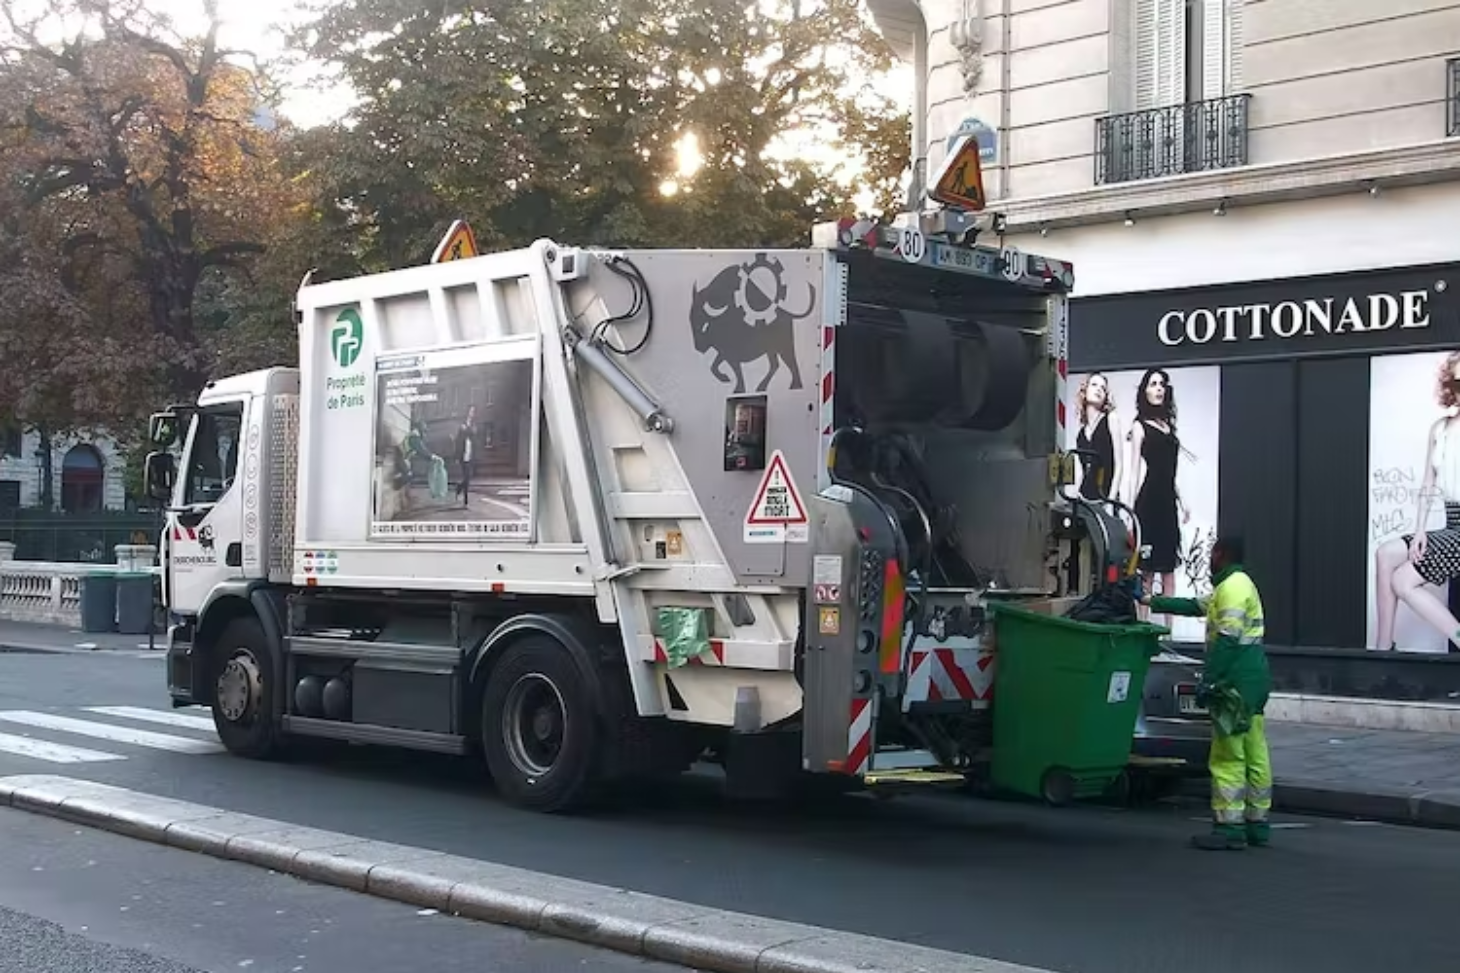 Durant une collecte de déchets, comme ici à Paris, la fréquence cardiaque d’un éboueur frôle le niveau considéré comme excessif. Wikimedia commons, CC BY-SA